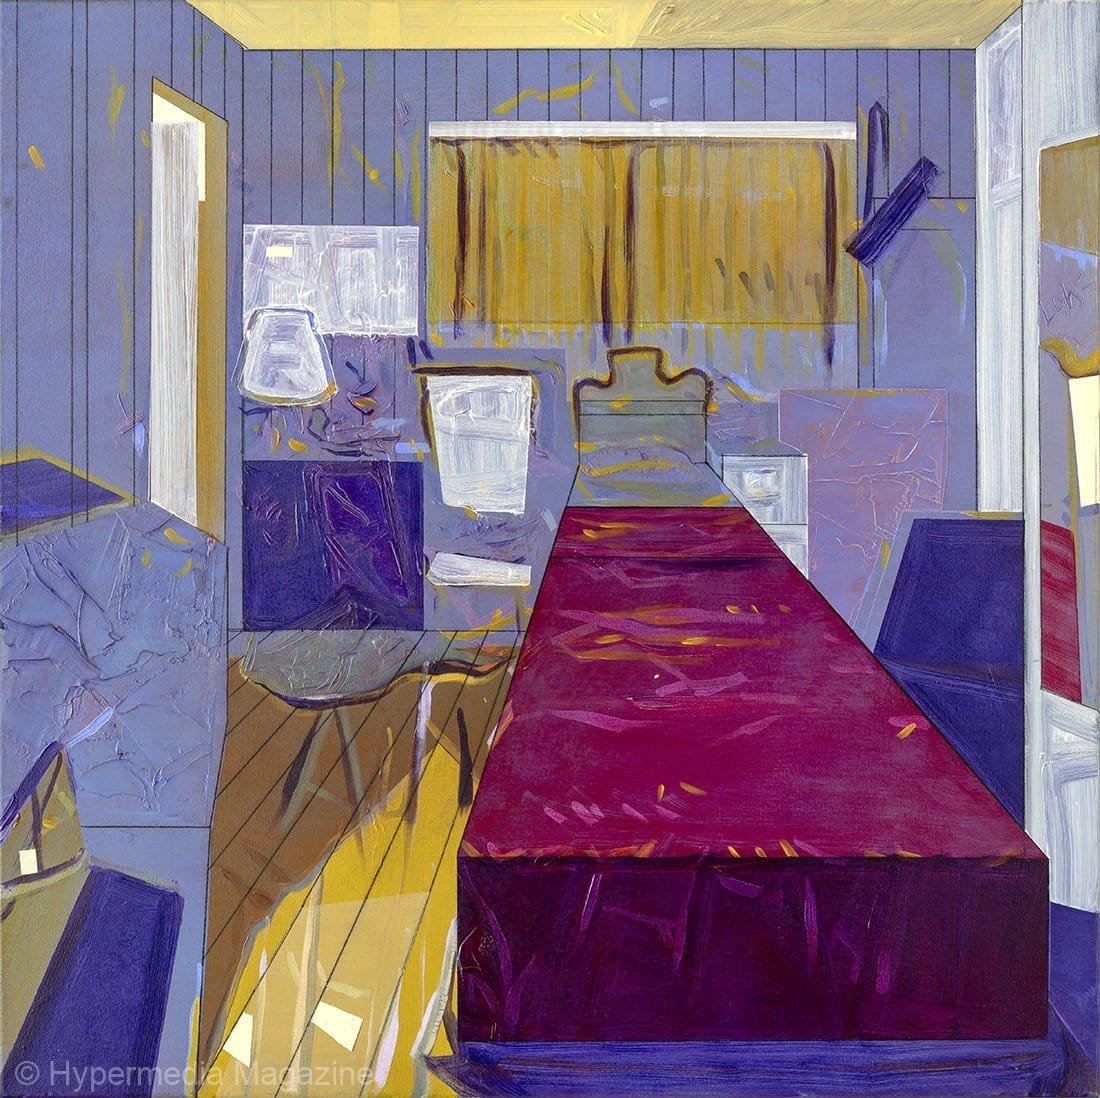 The Bedroom, 2017